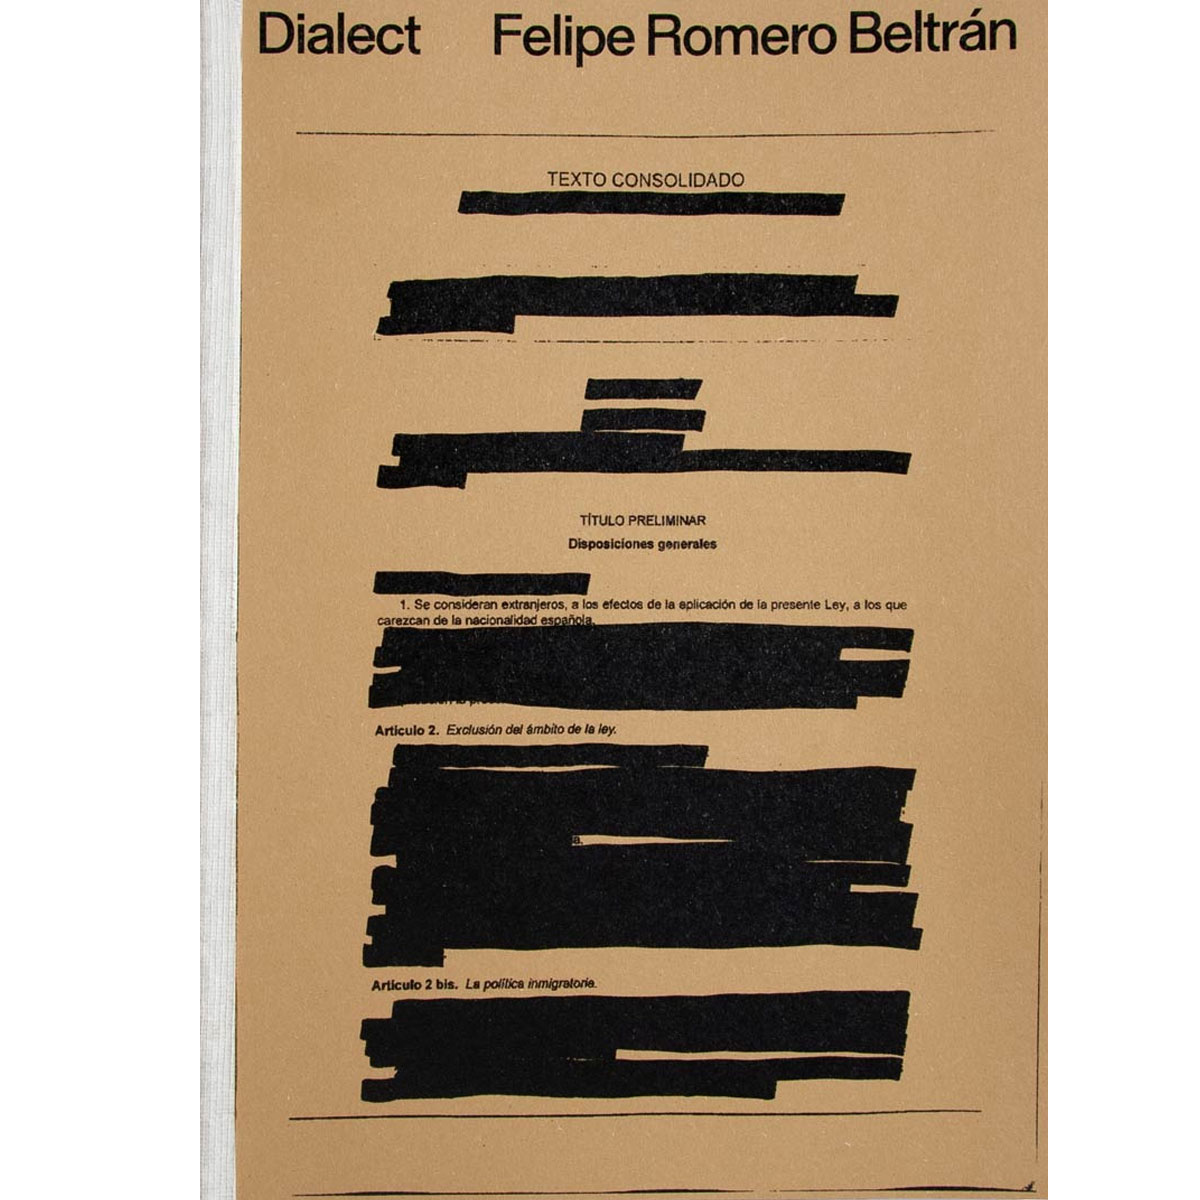 Felipe Romero Beltrán Dialect